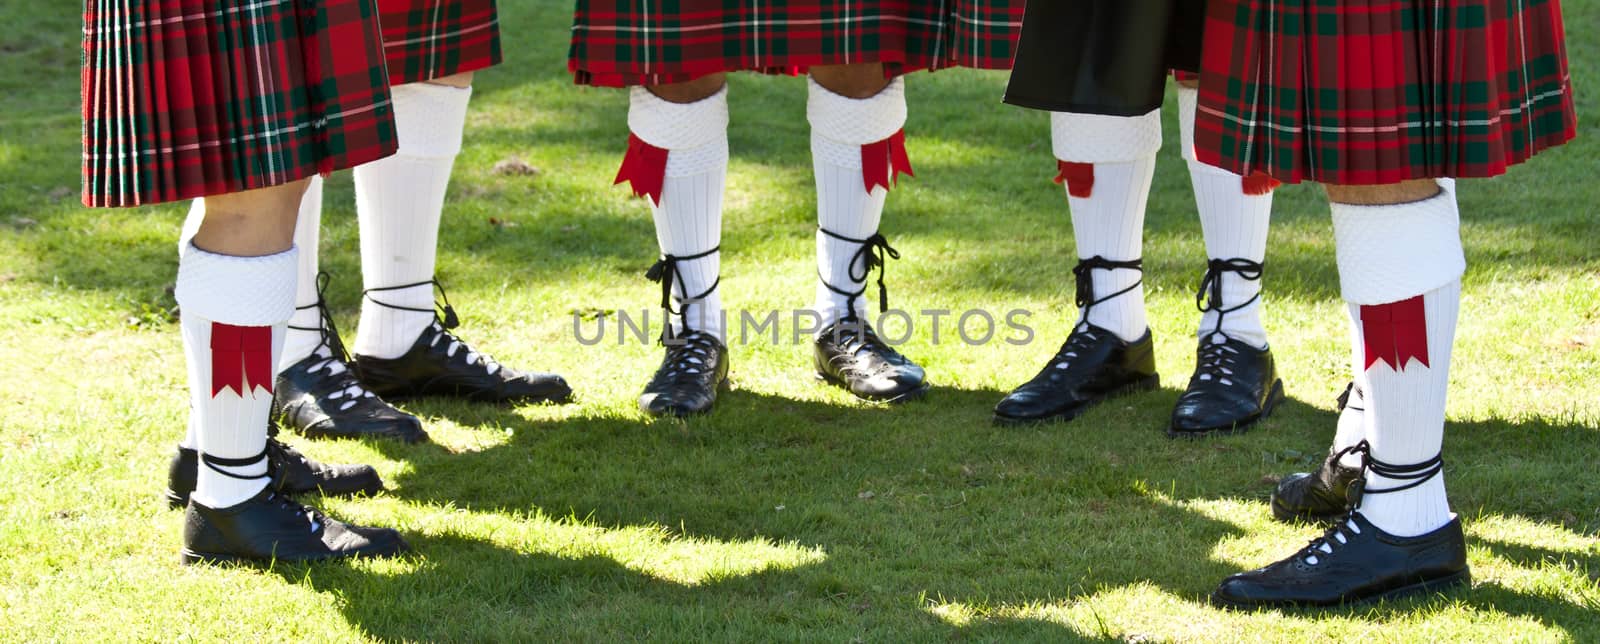 Detail of original Scottish kilts, during Highlands games